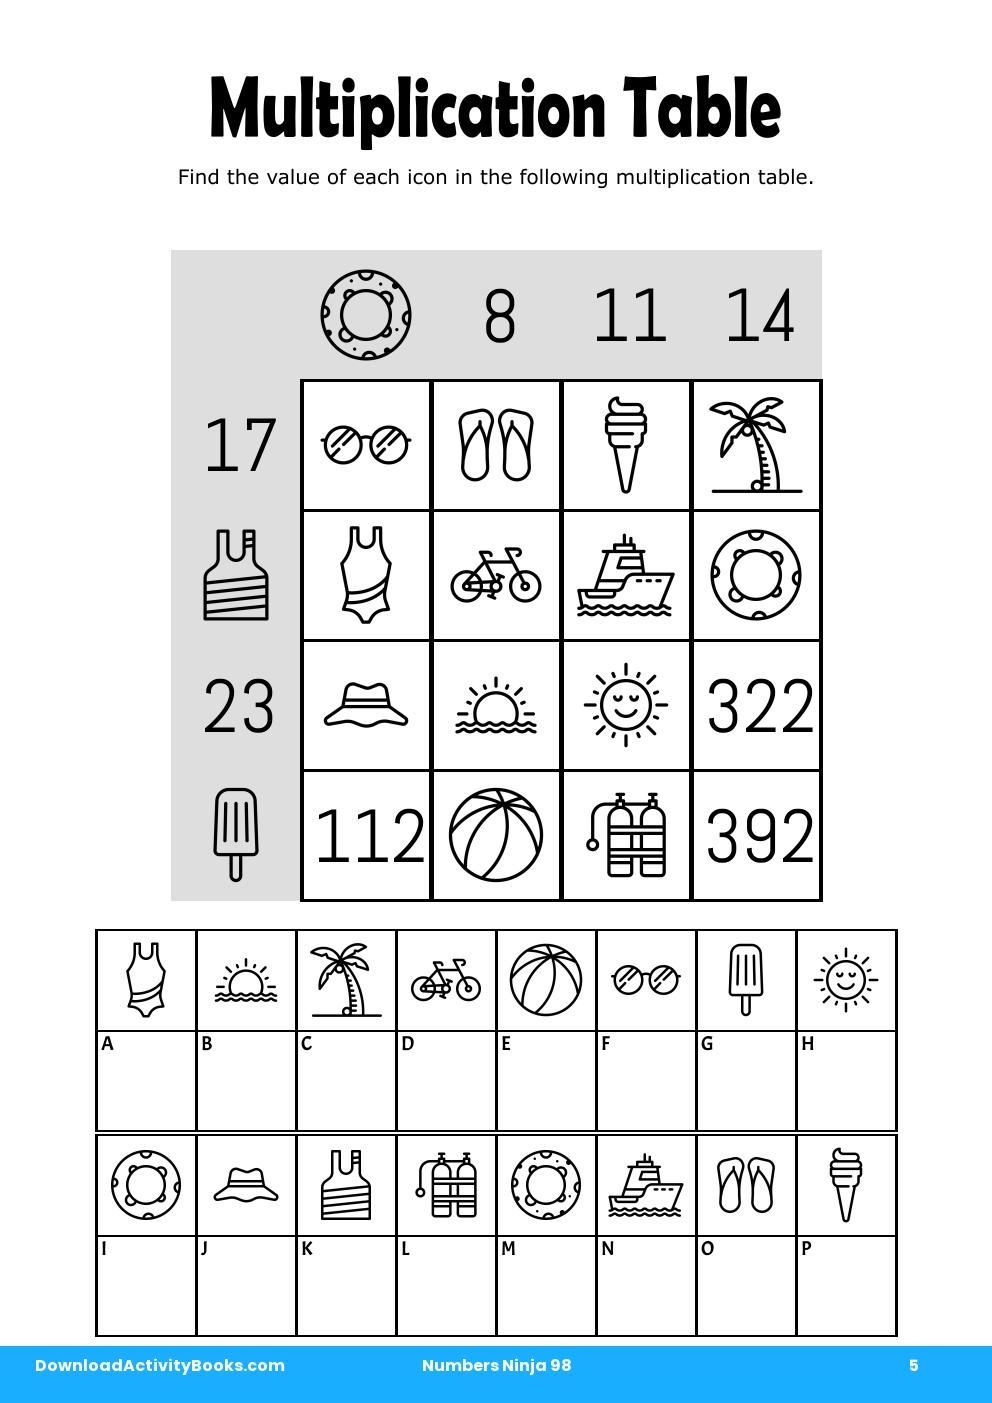 Multiplication Table in Numbers Ninja 98